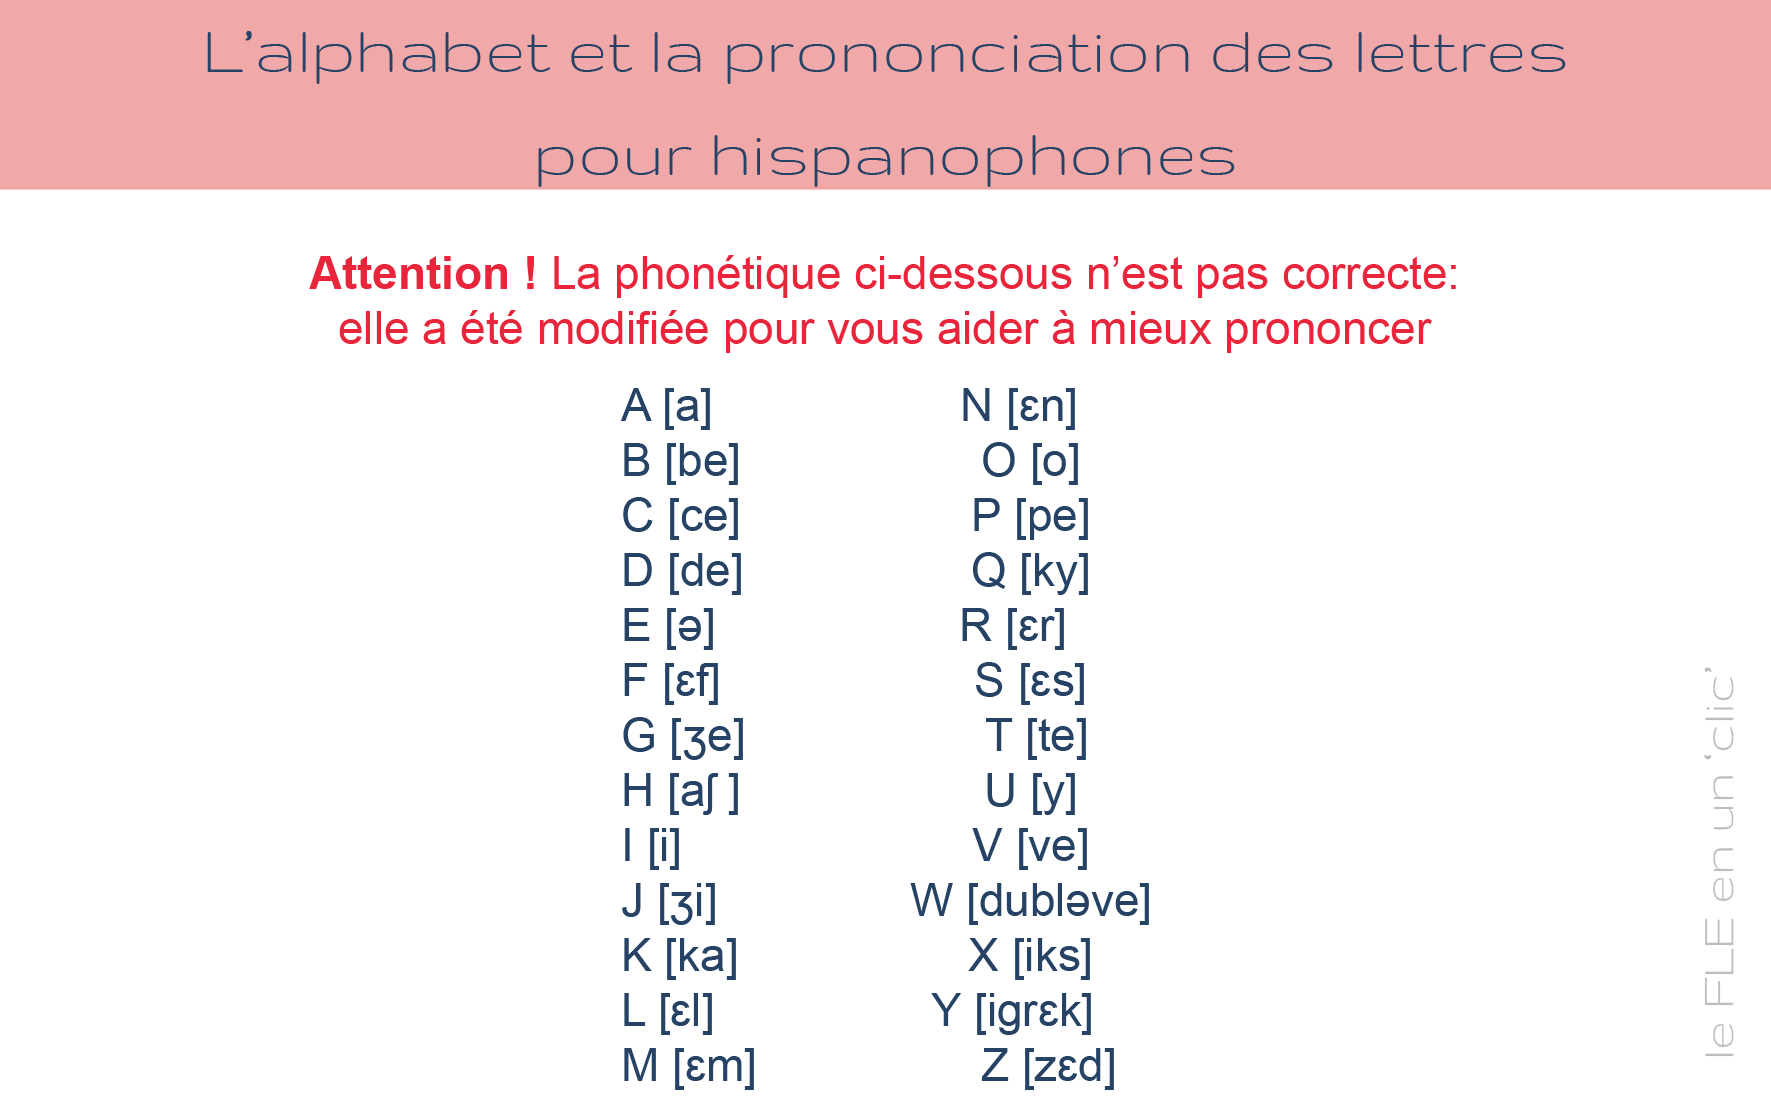 L'alphabet en français et la prononciation des lettres pour hispanophones